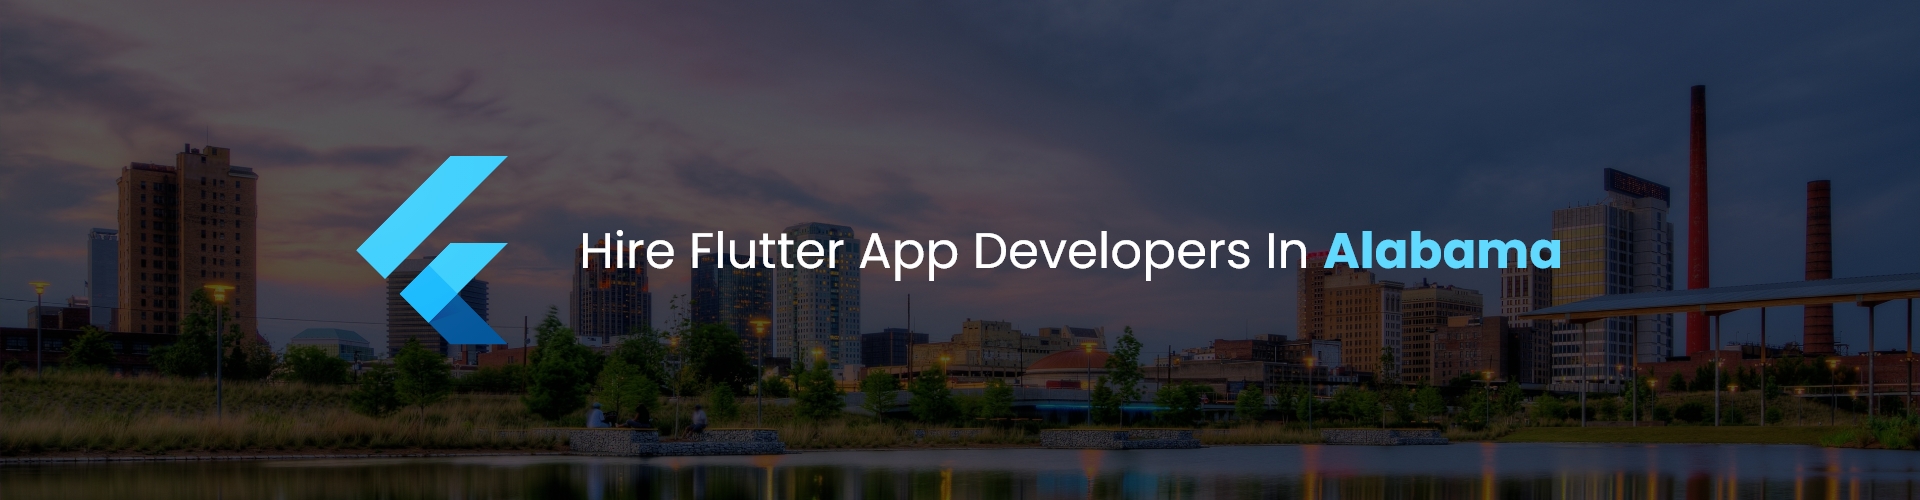 hire flutter app developers in alabama